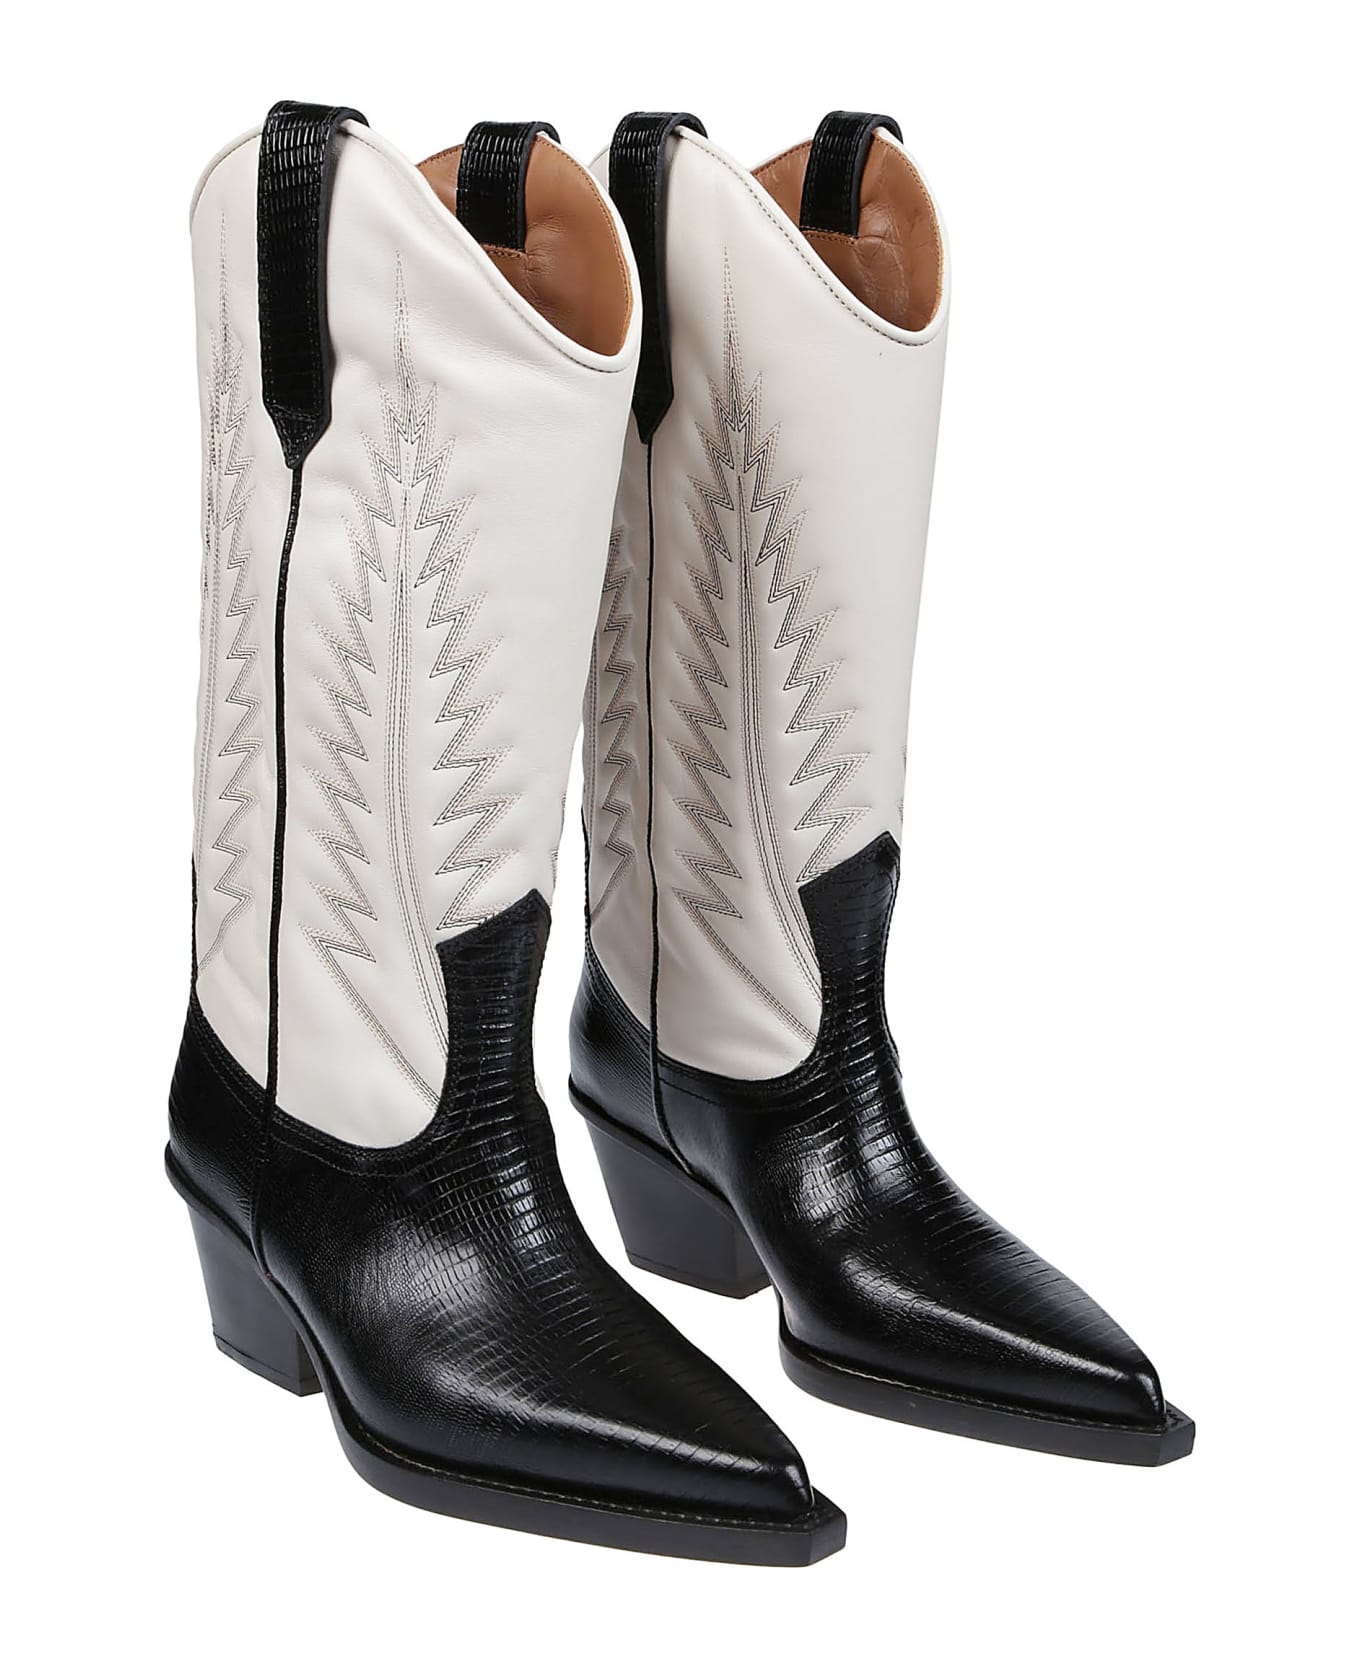 Paris Texas Rosario Boots - Black/bone